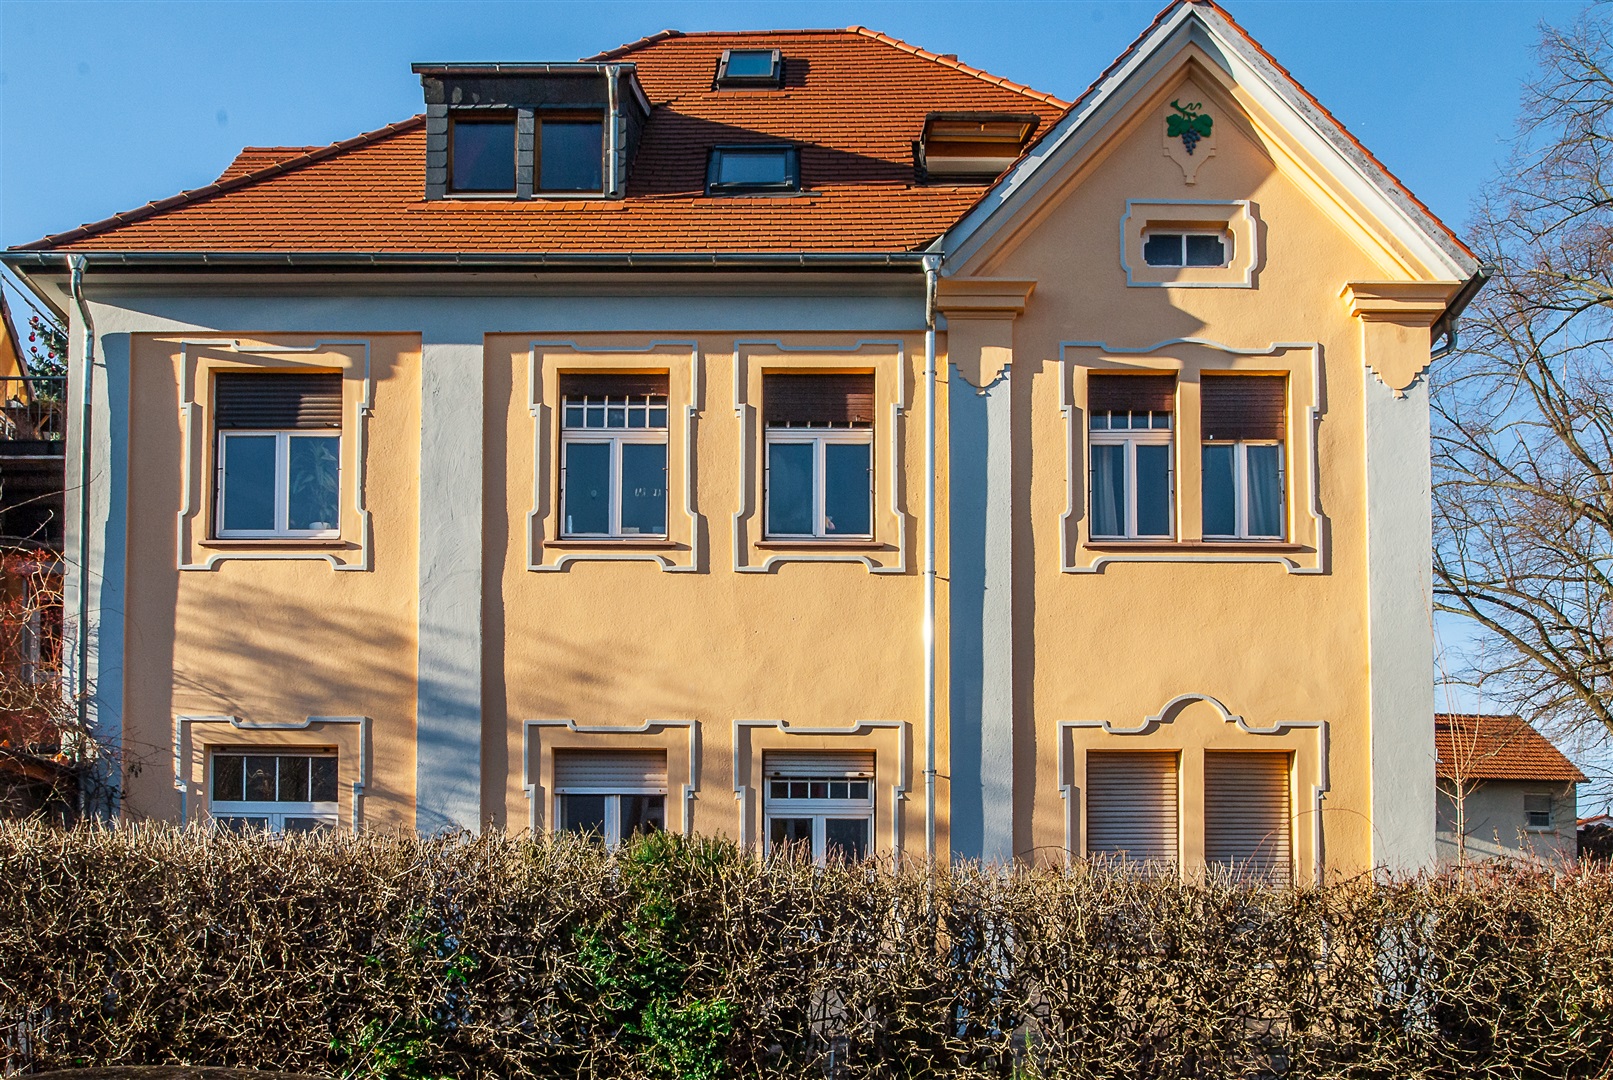 Schöne, historische Fassade - Oliver Reifferscheid - Immobilienmakler Darmstadt